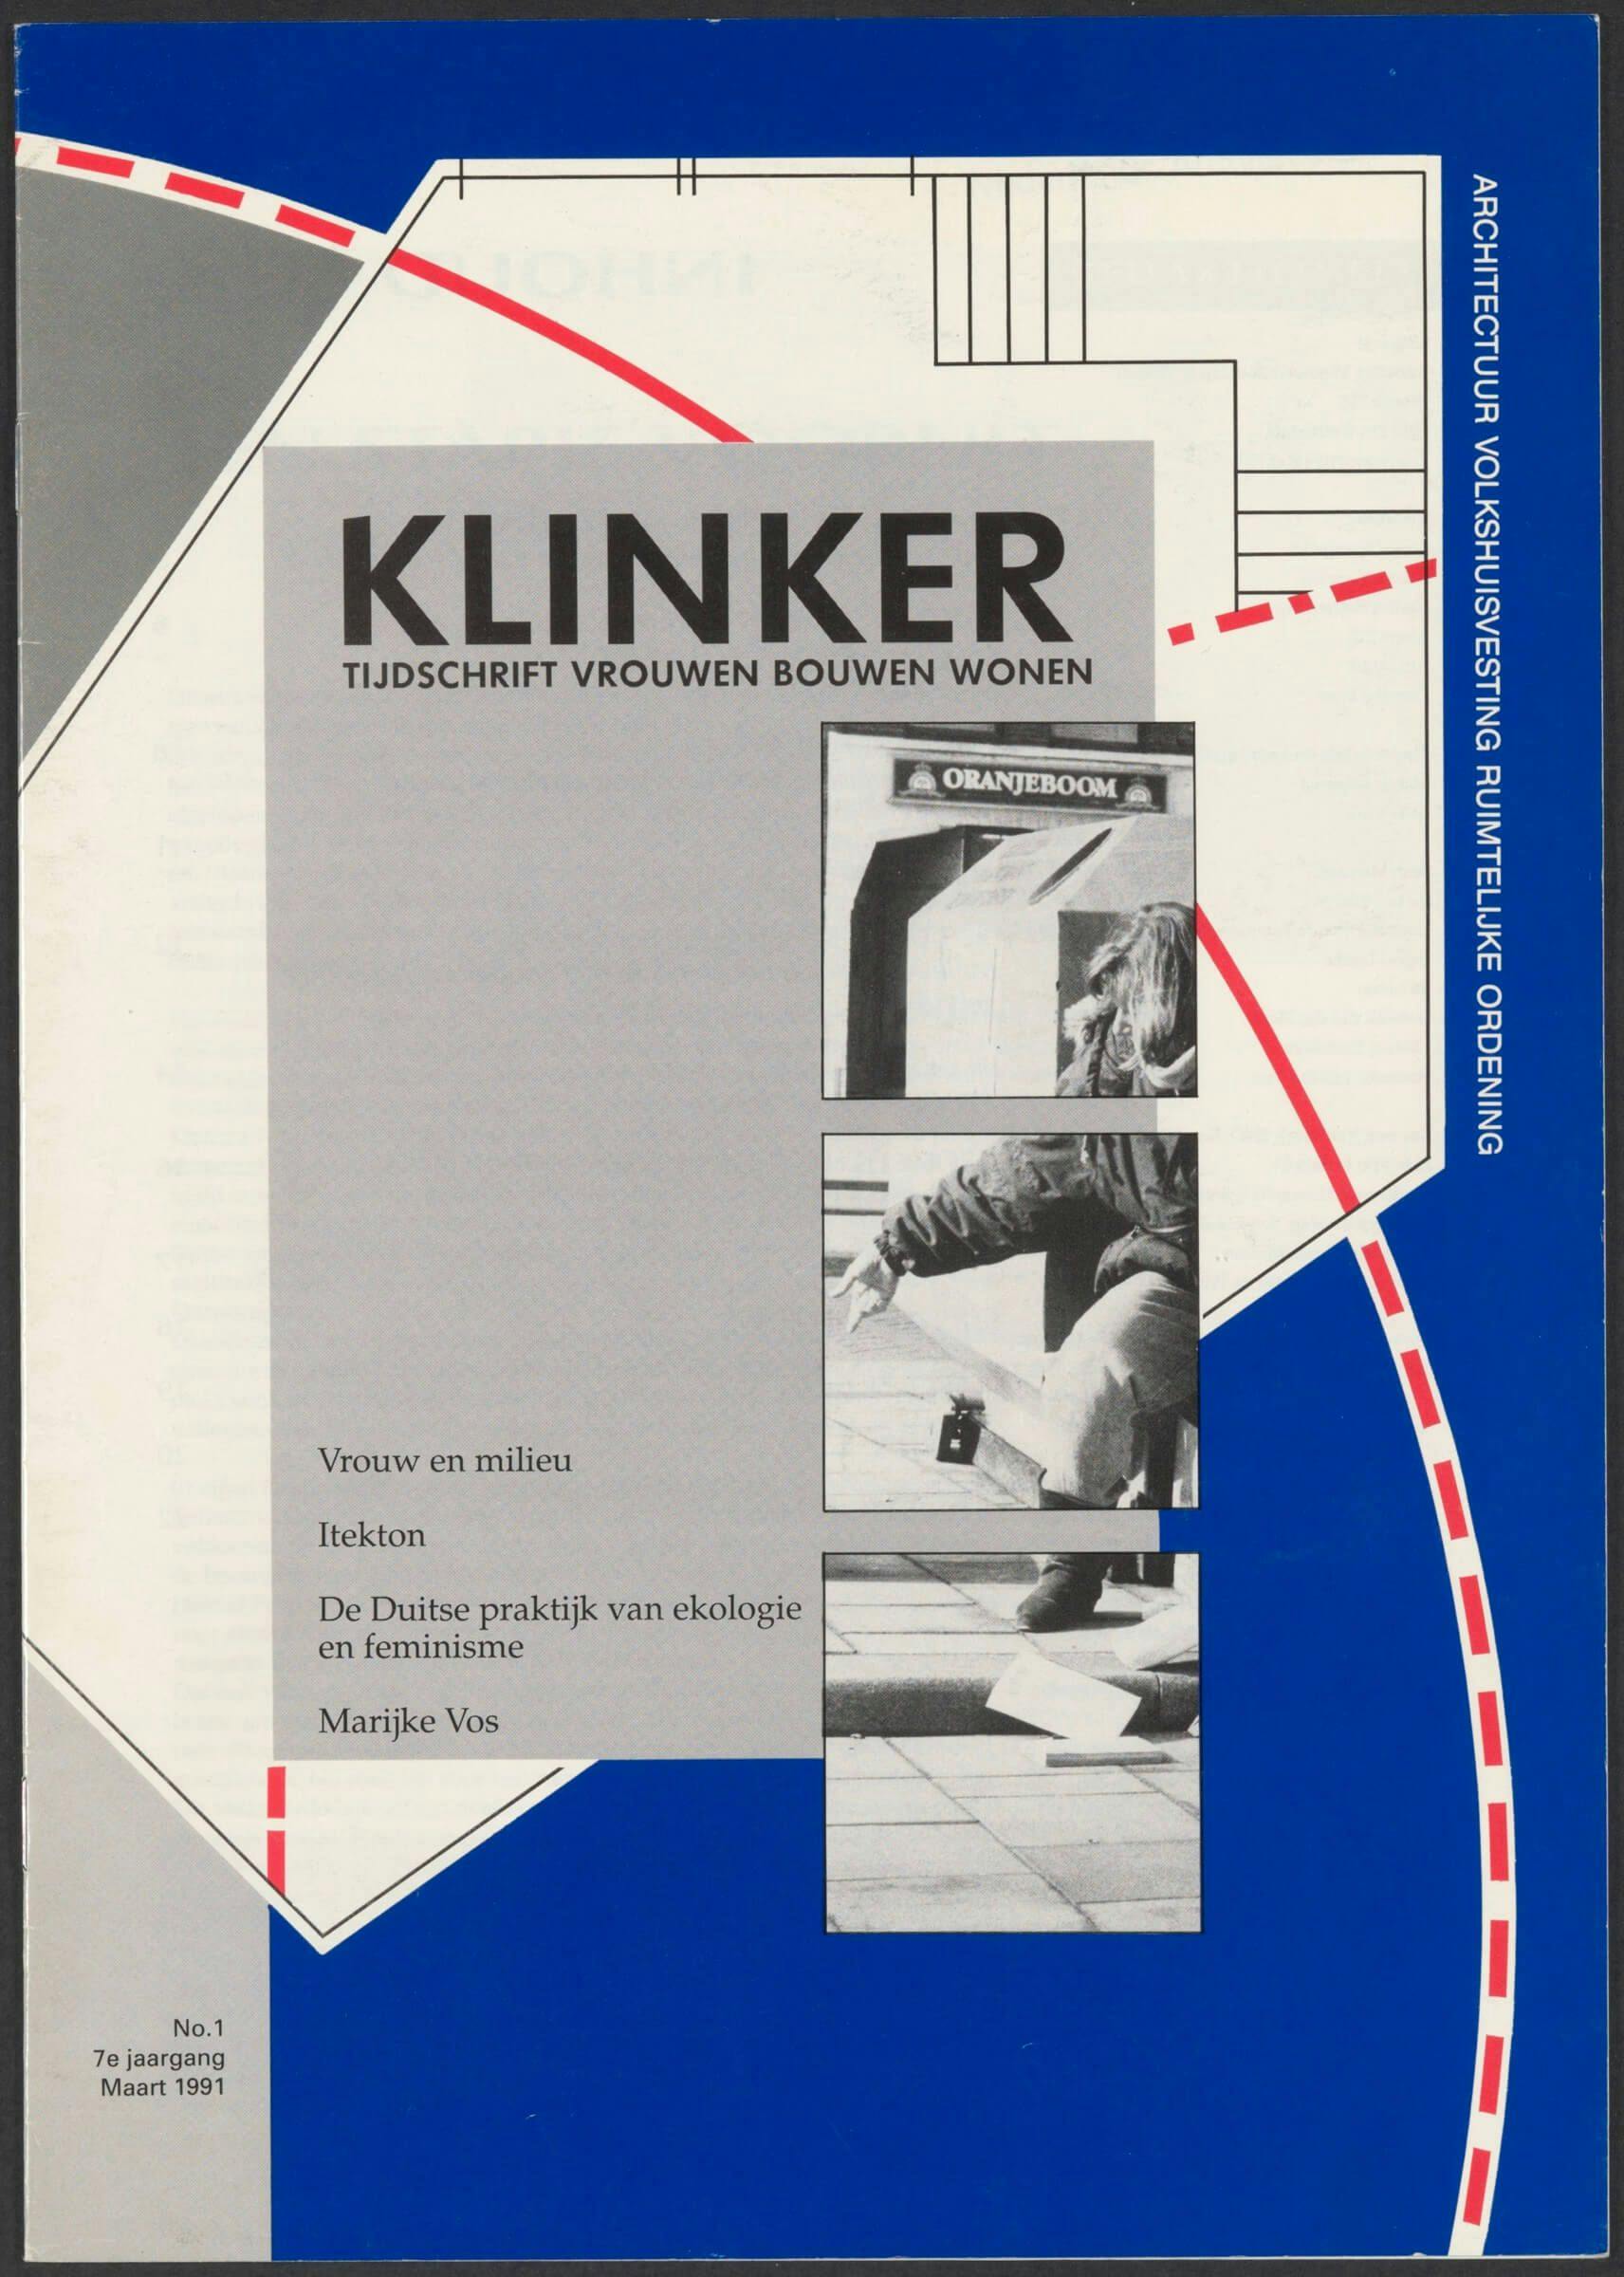 Klinker, Krant gedelegeerd door Vrouwen Bouwen Wonen. Maart 1991. Collectie Het Nieuwe Instituut. 